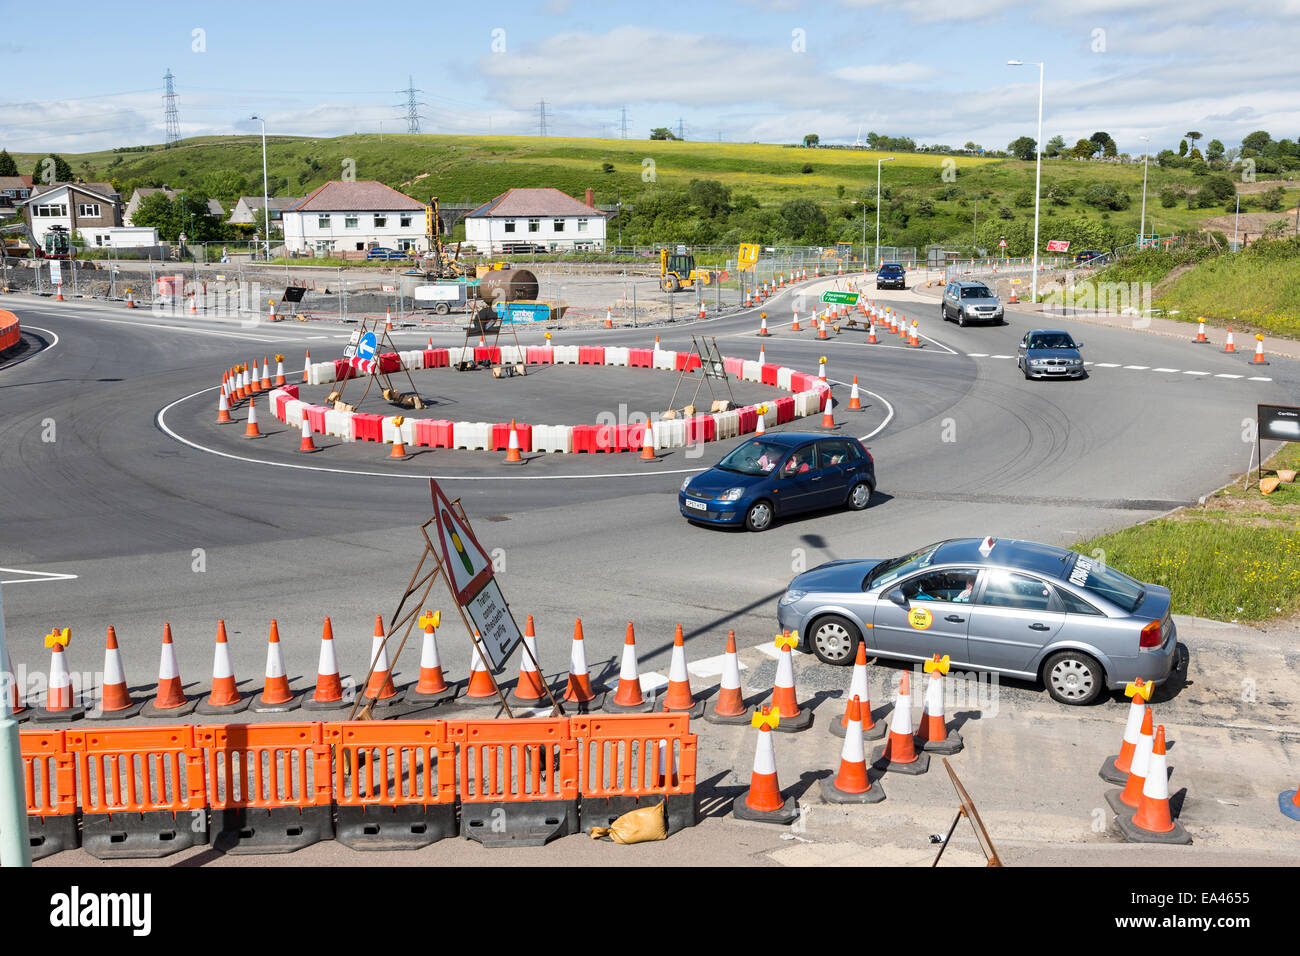 Las obras viales durante la reconstrucción de los jefes de los valles A465 Carretera con rotonda temporales, Trefil, Wales, REINO UNIDO Foto de stock